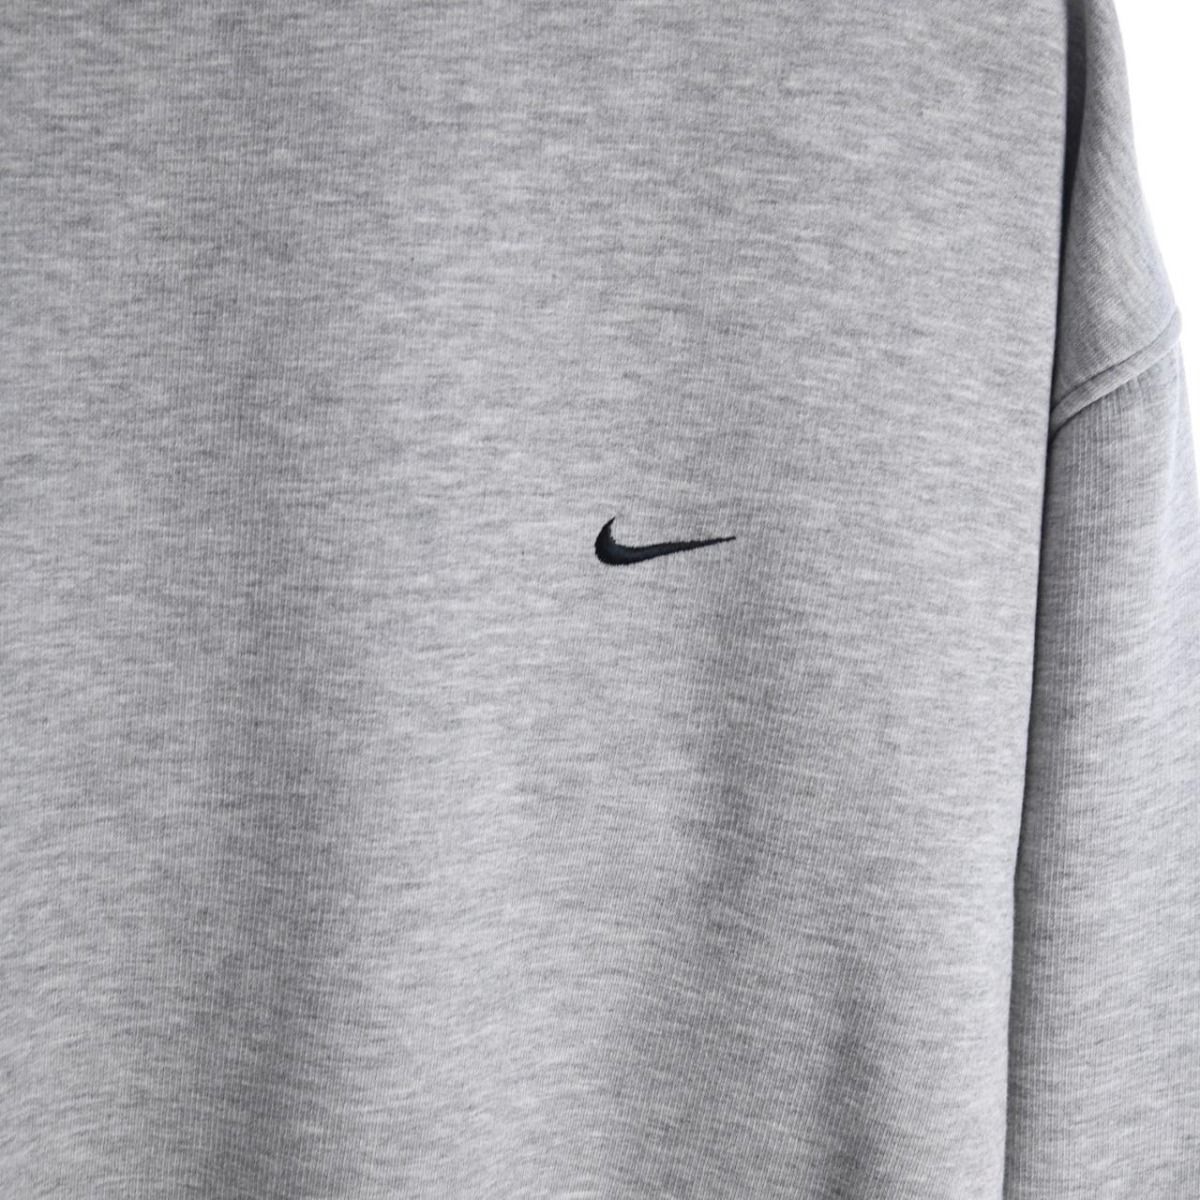 Nike Early 2000s Grey Sweatshirt